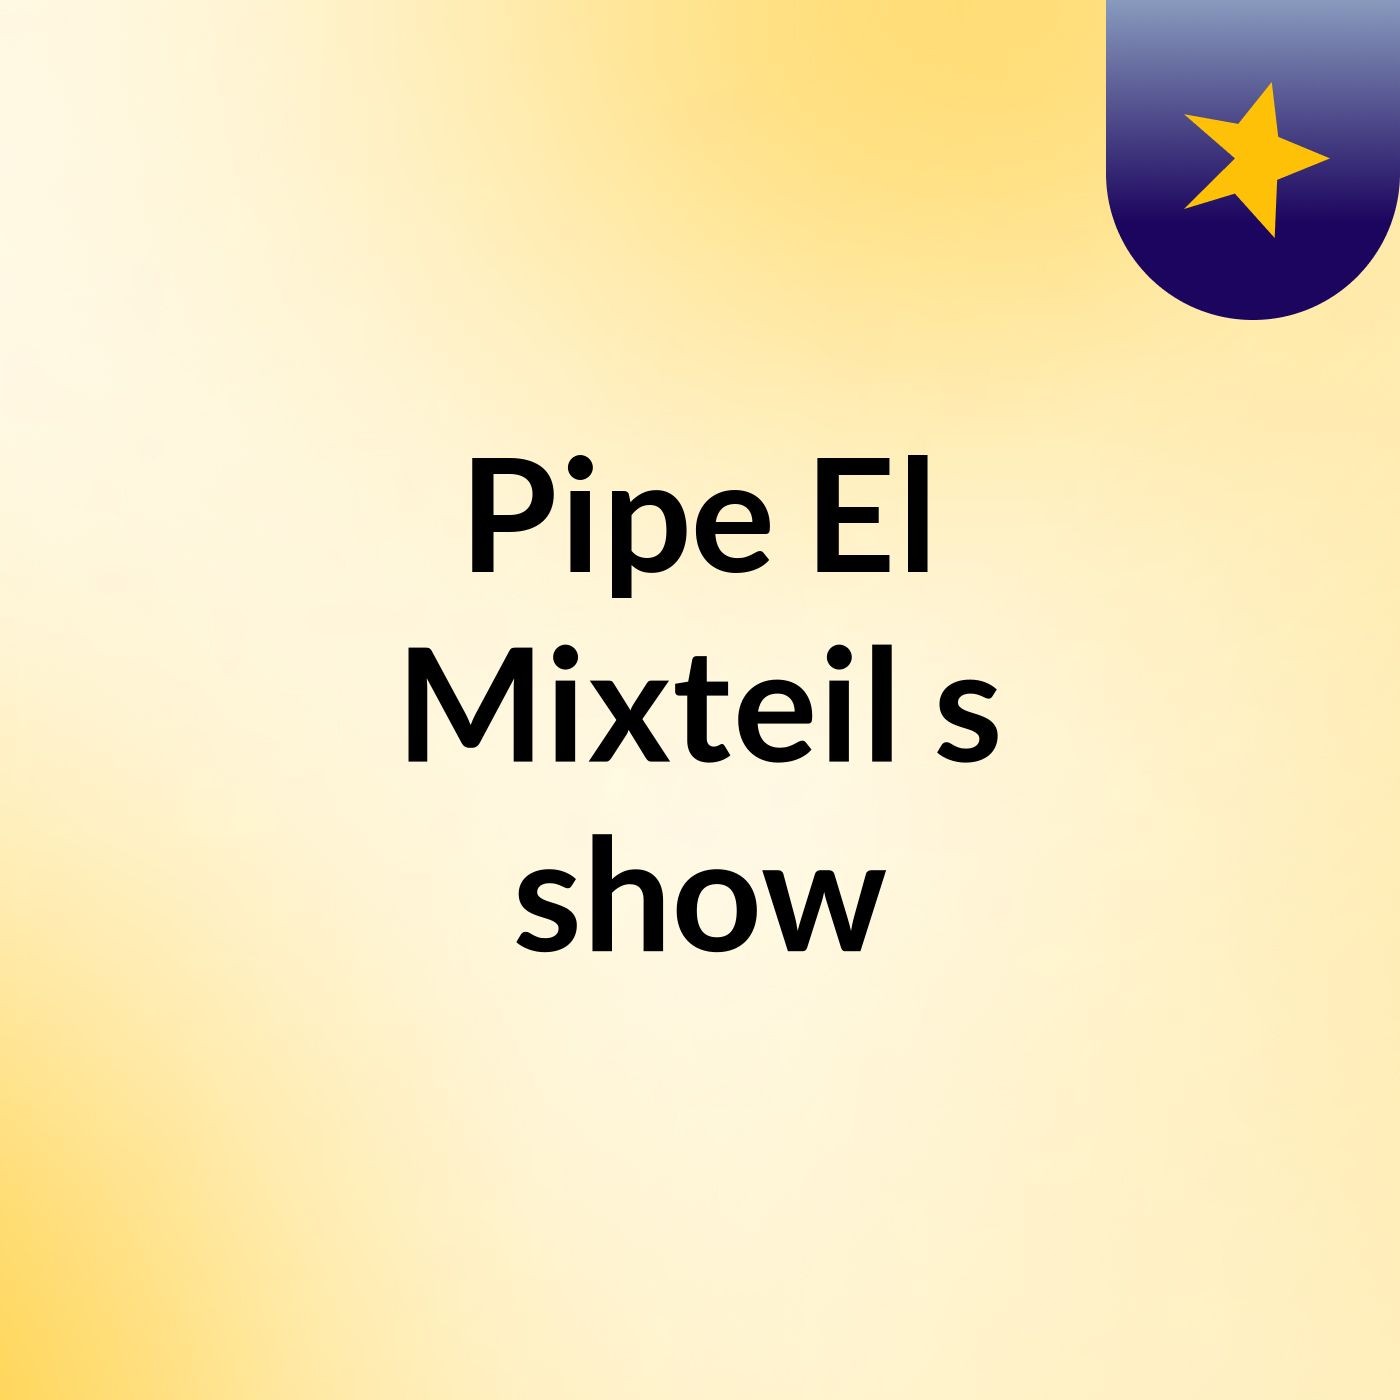 Pipe El Mixteil's show